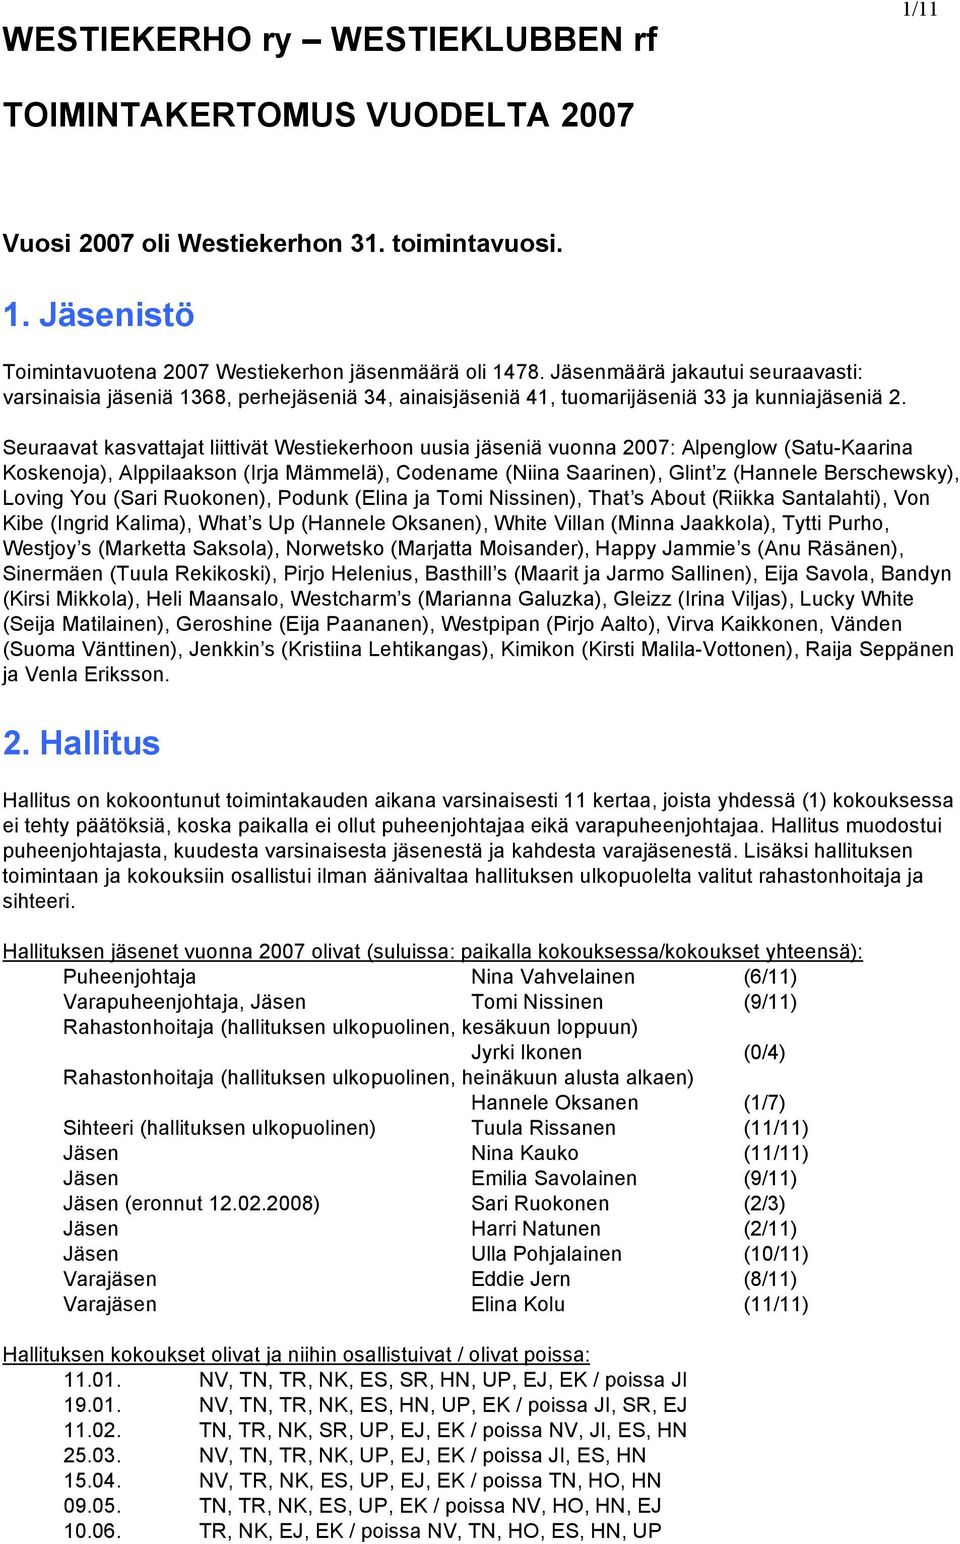 Seuraavat kasvattajat liittivät Westiekerhoon uusia jäseniä vuonna 2007: Alpenglow (Satu-Kaarina Koskenoja), Alppilaakson (Irja Mämmelä), Codename (Niina Saarinen), Glint z (Hannele Berschewsky),